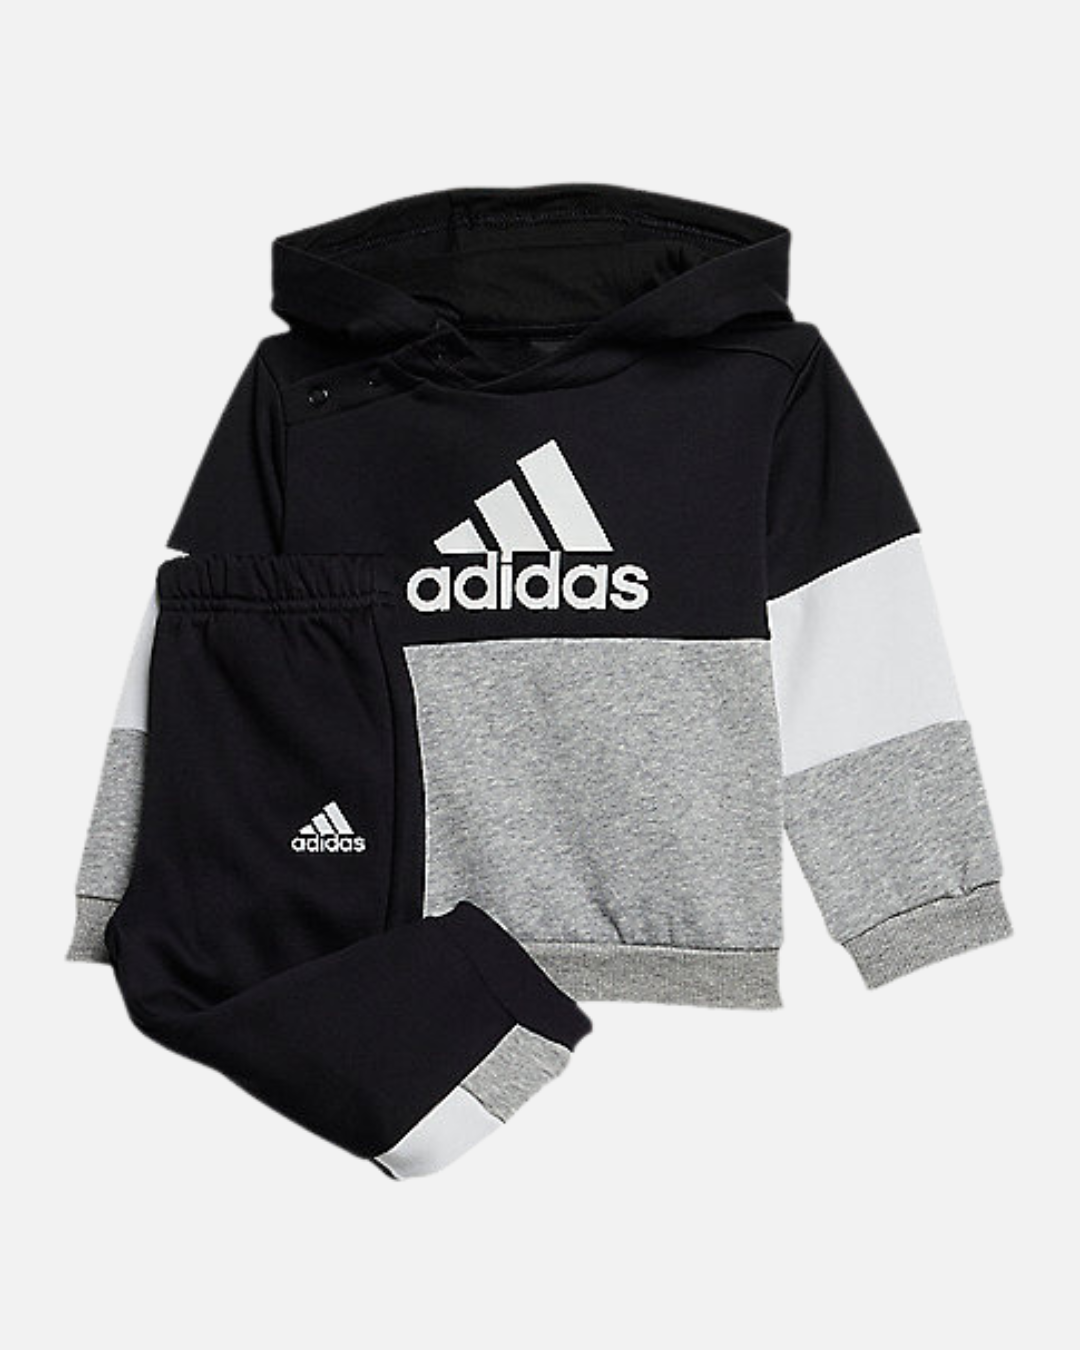 Adidas Baby Tracksuit Set - Black/White/Grey